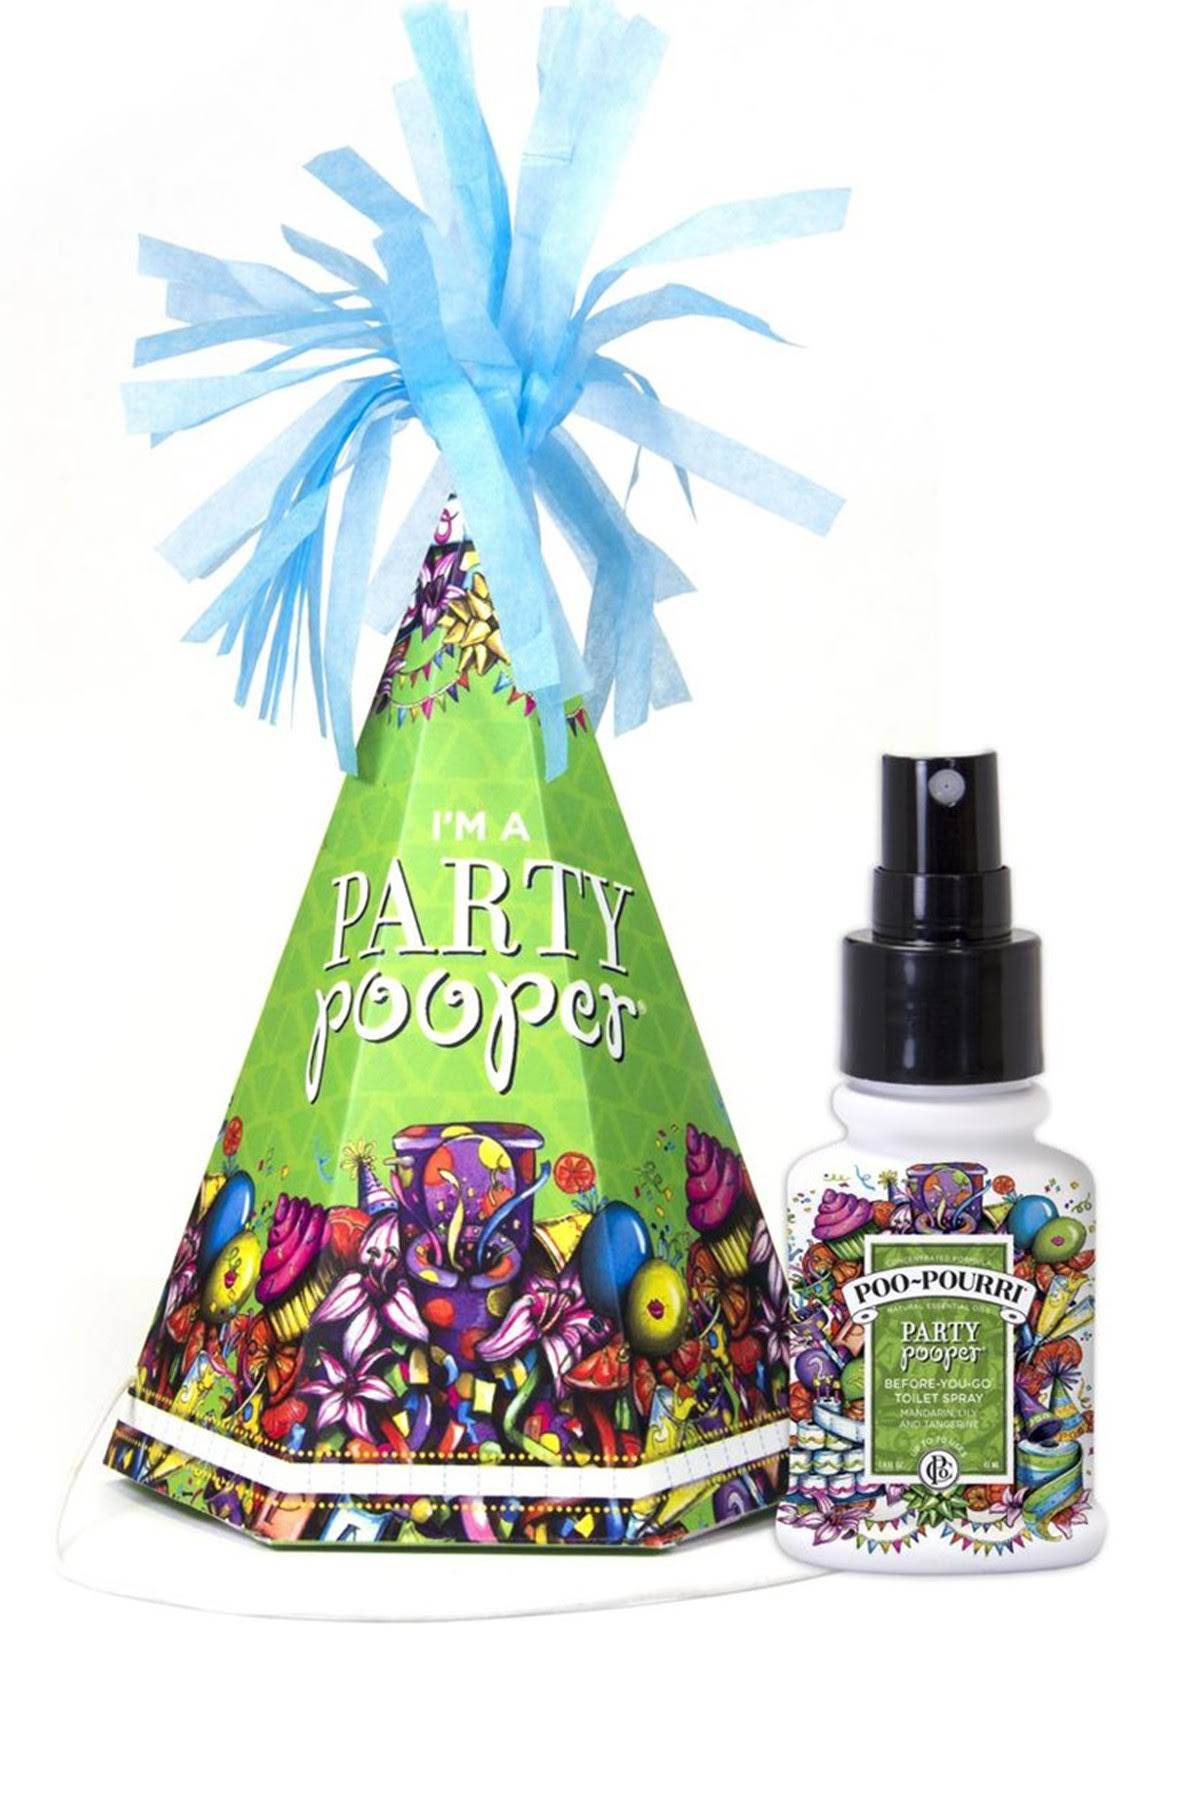 Poo-Pourri Party Pooper Gift Set